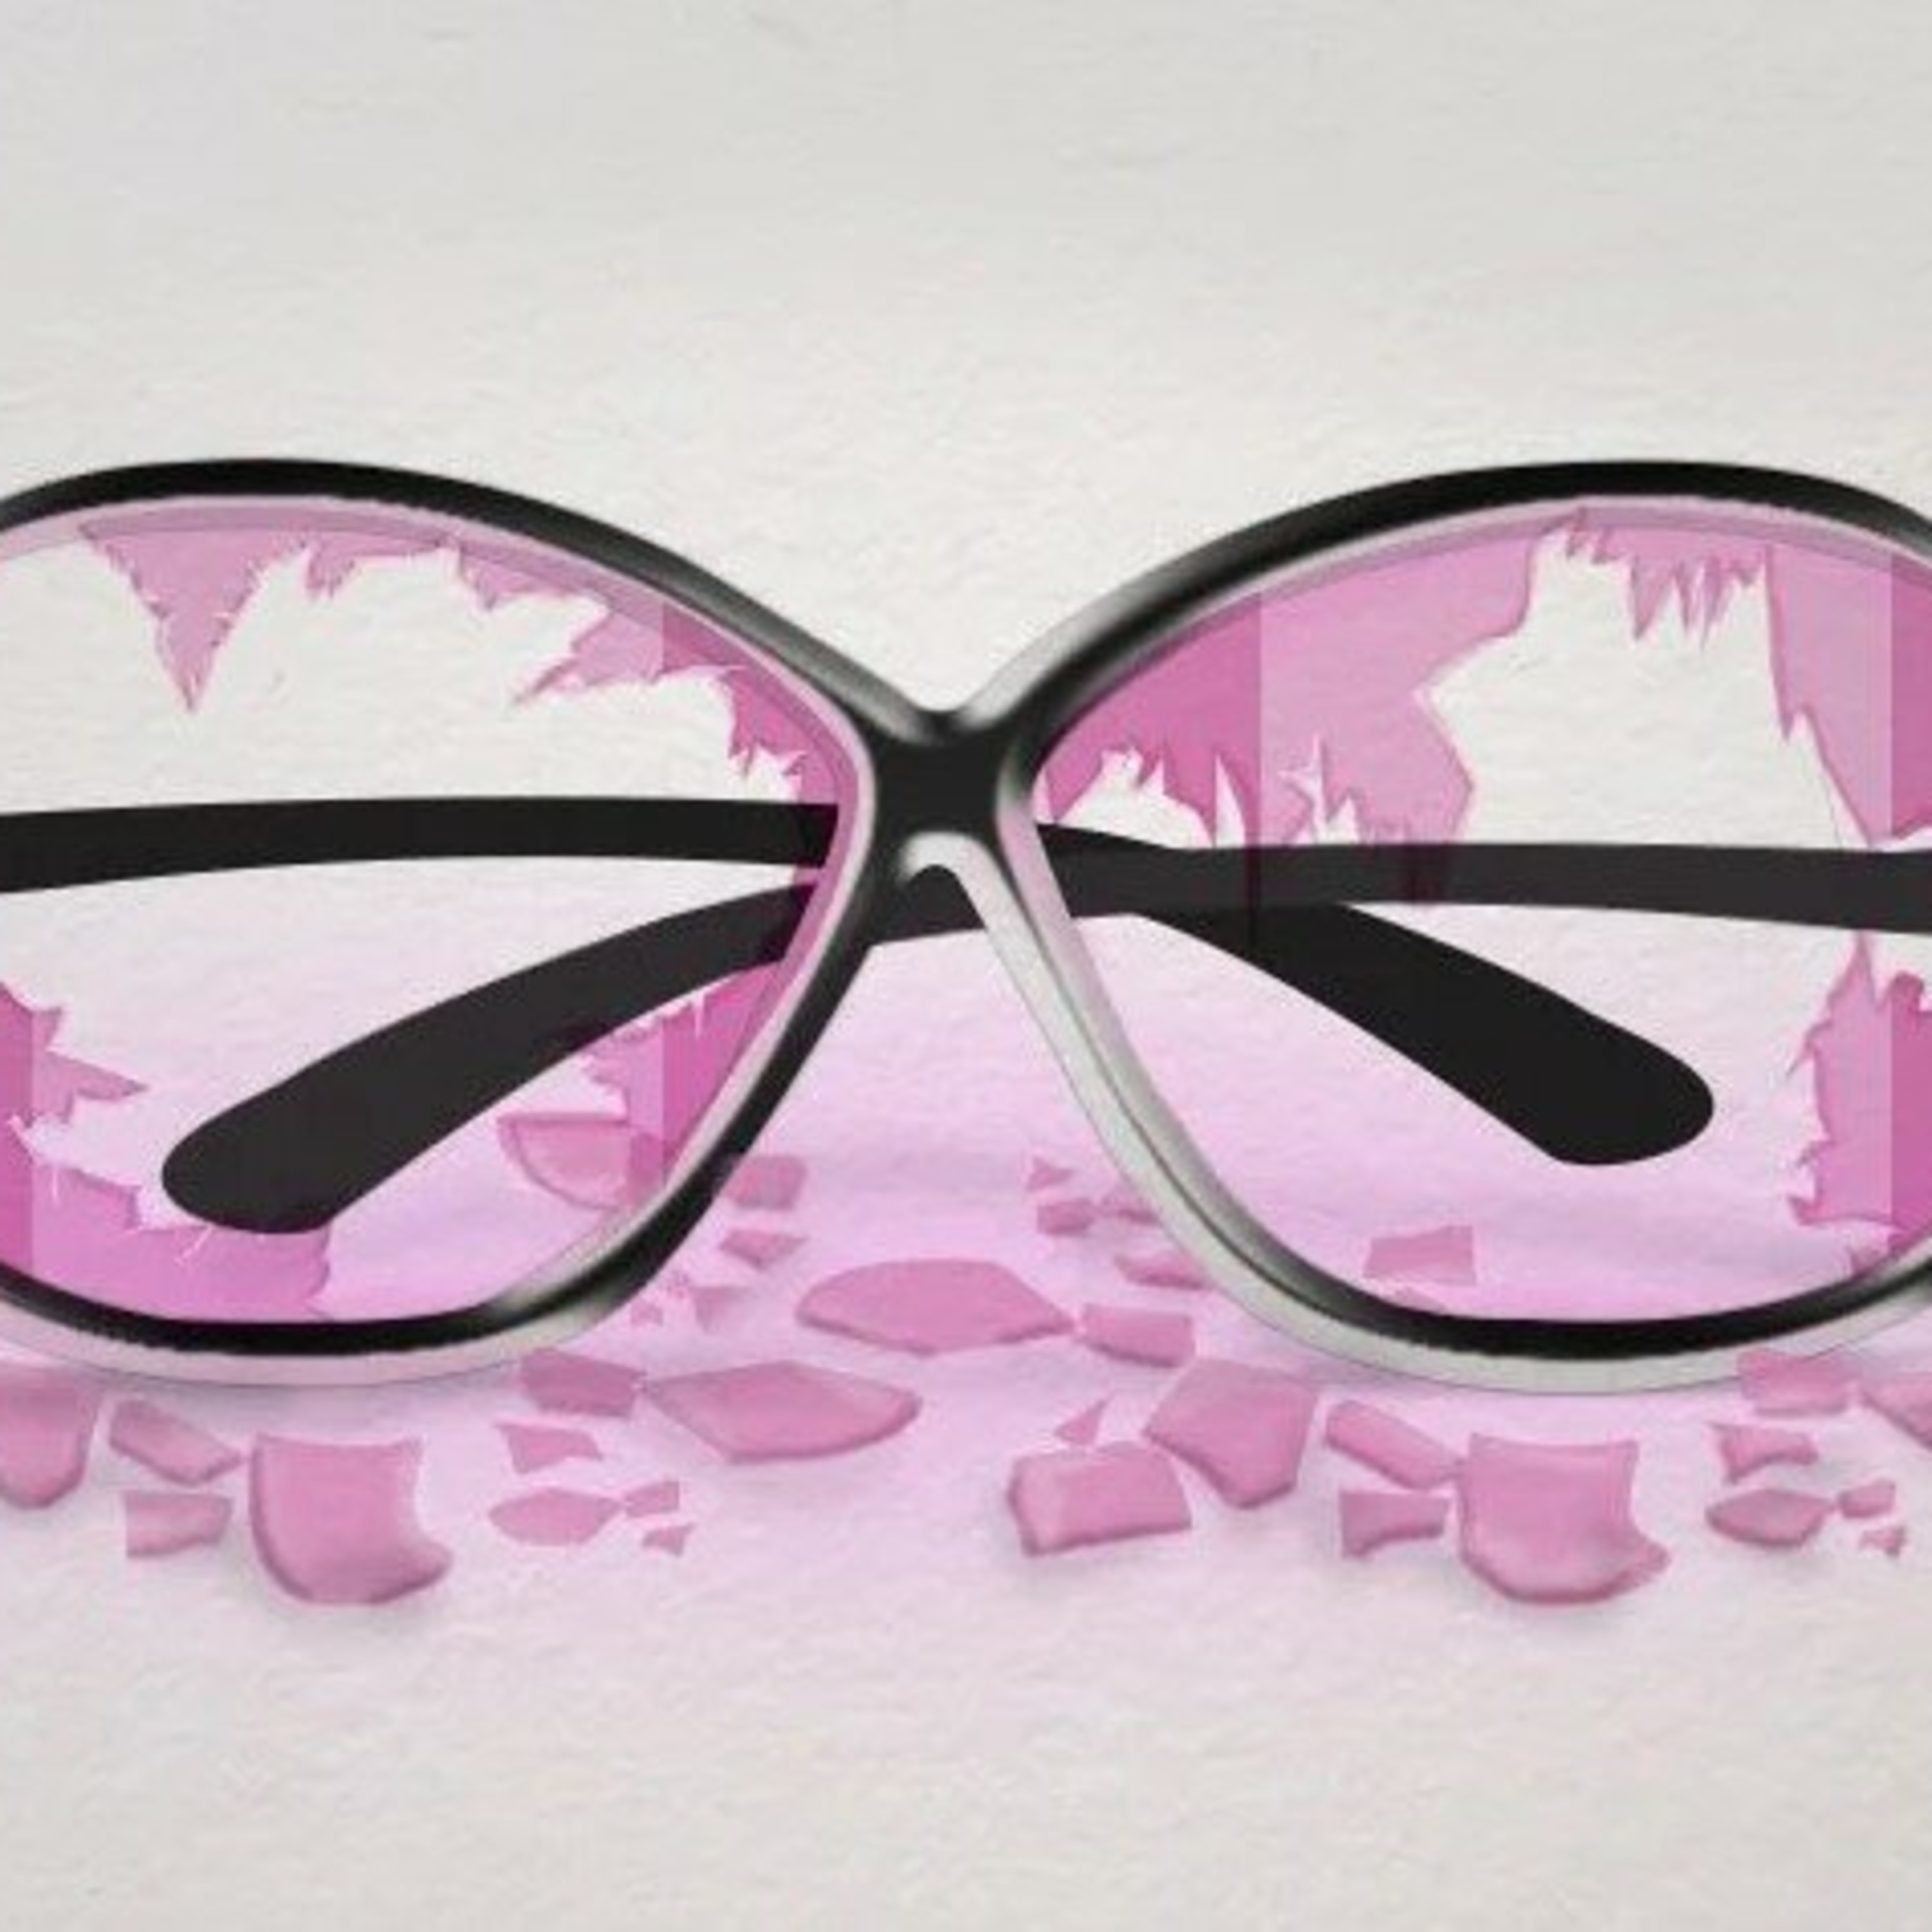 розовые очки картинки смешные